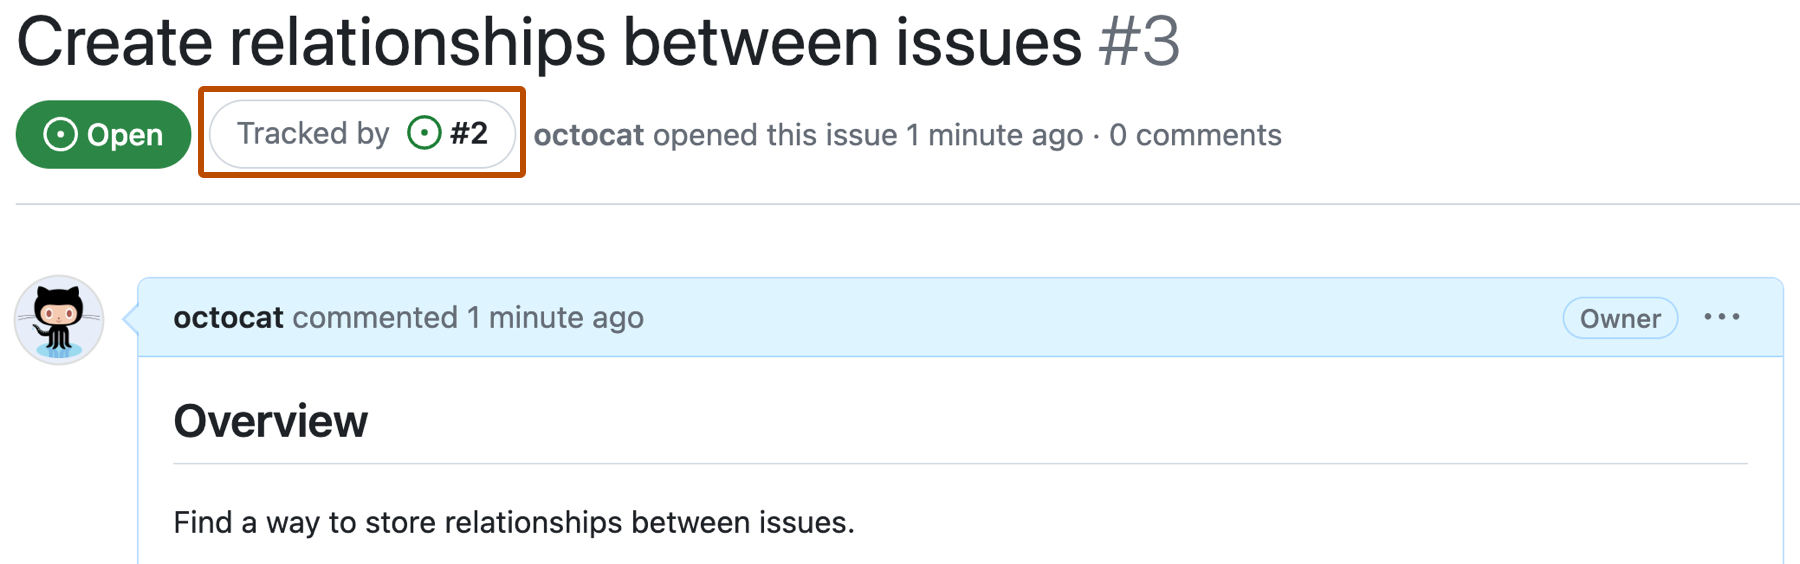 名为“创建问题之间的关系”的 GitHub 问题和问题 #3 的屏幕截图。 问题标题下方显示为“由问题 #2 跟踪”的一个按钮用深橙色框出。